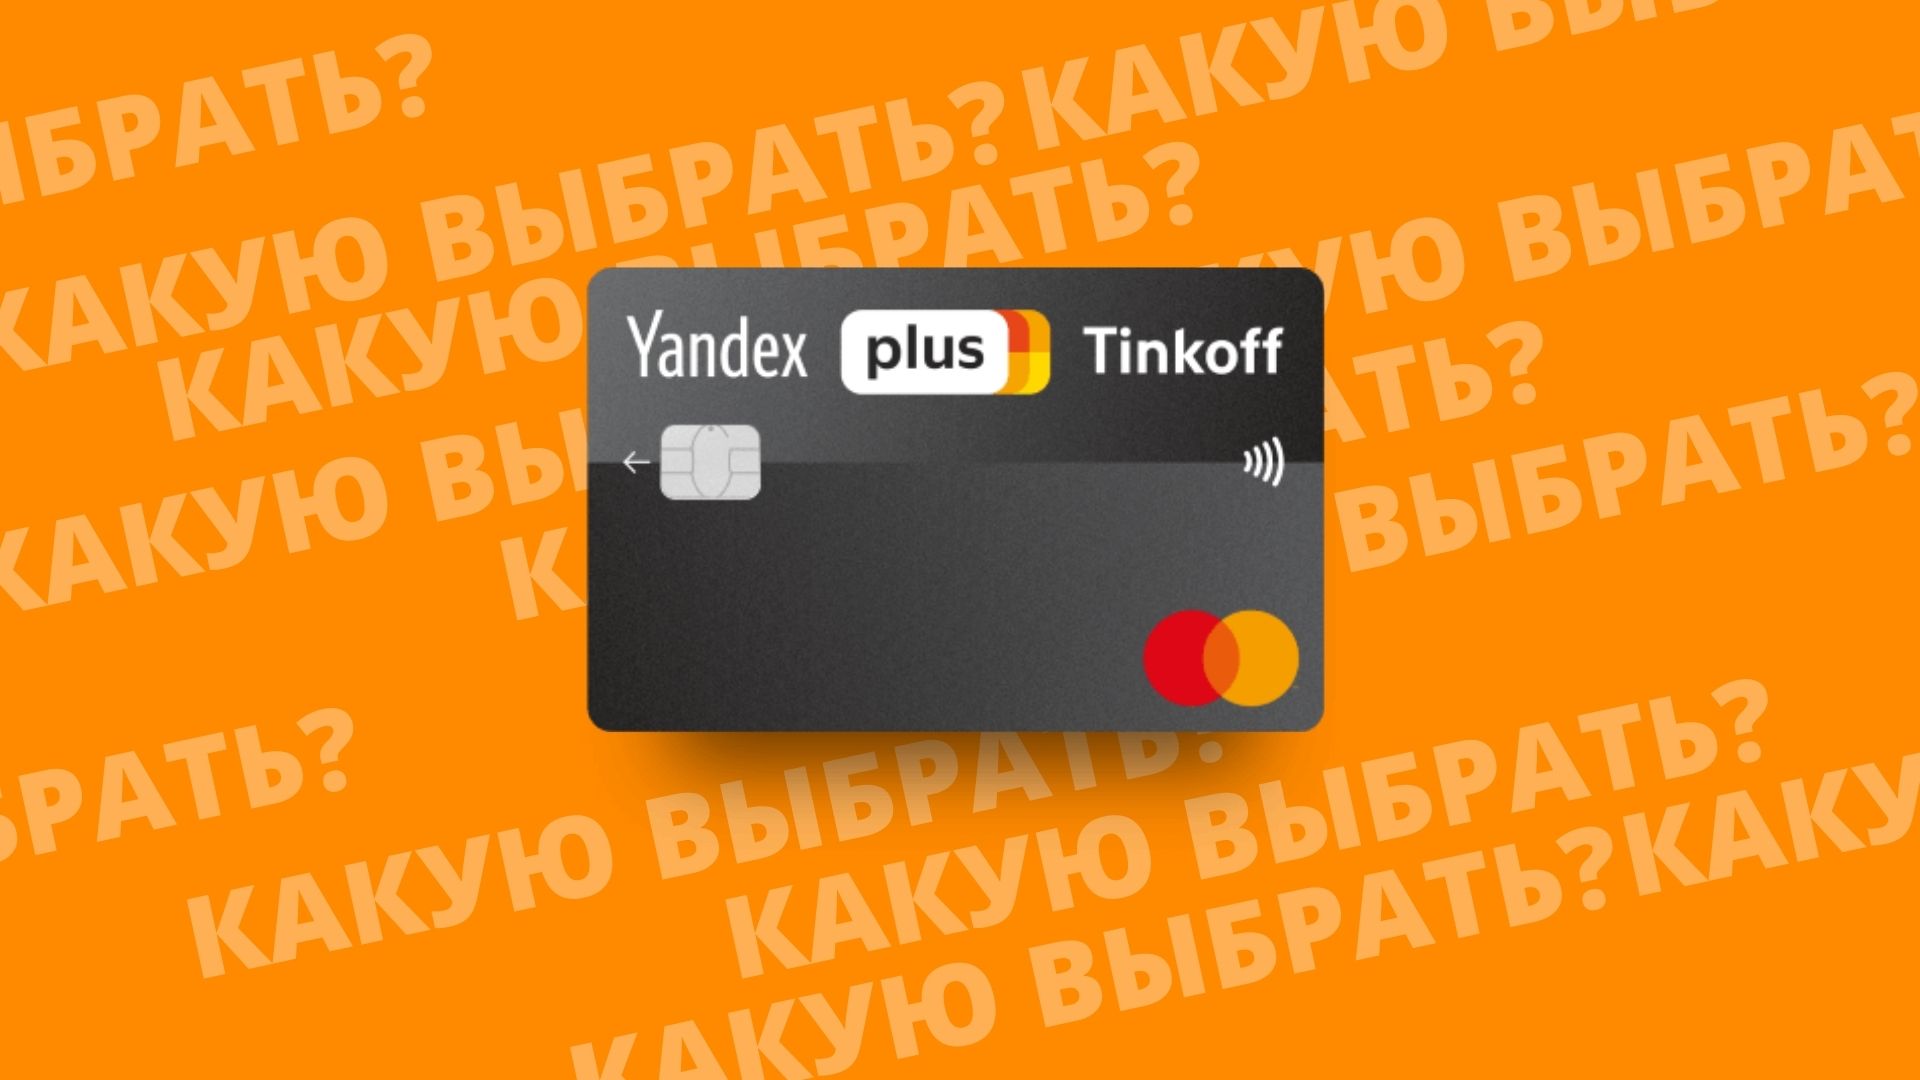 Тинькофф Яндекс плюс дебетовая карта банка Тинькофф. Почему стоит выбрать